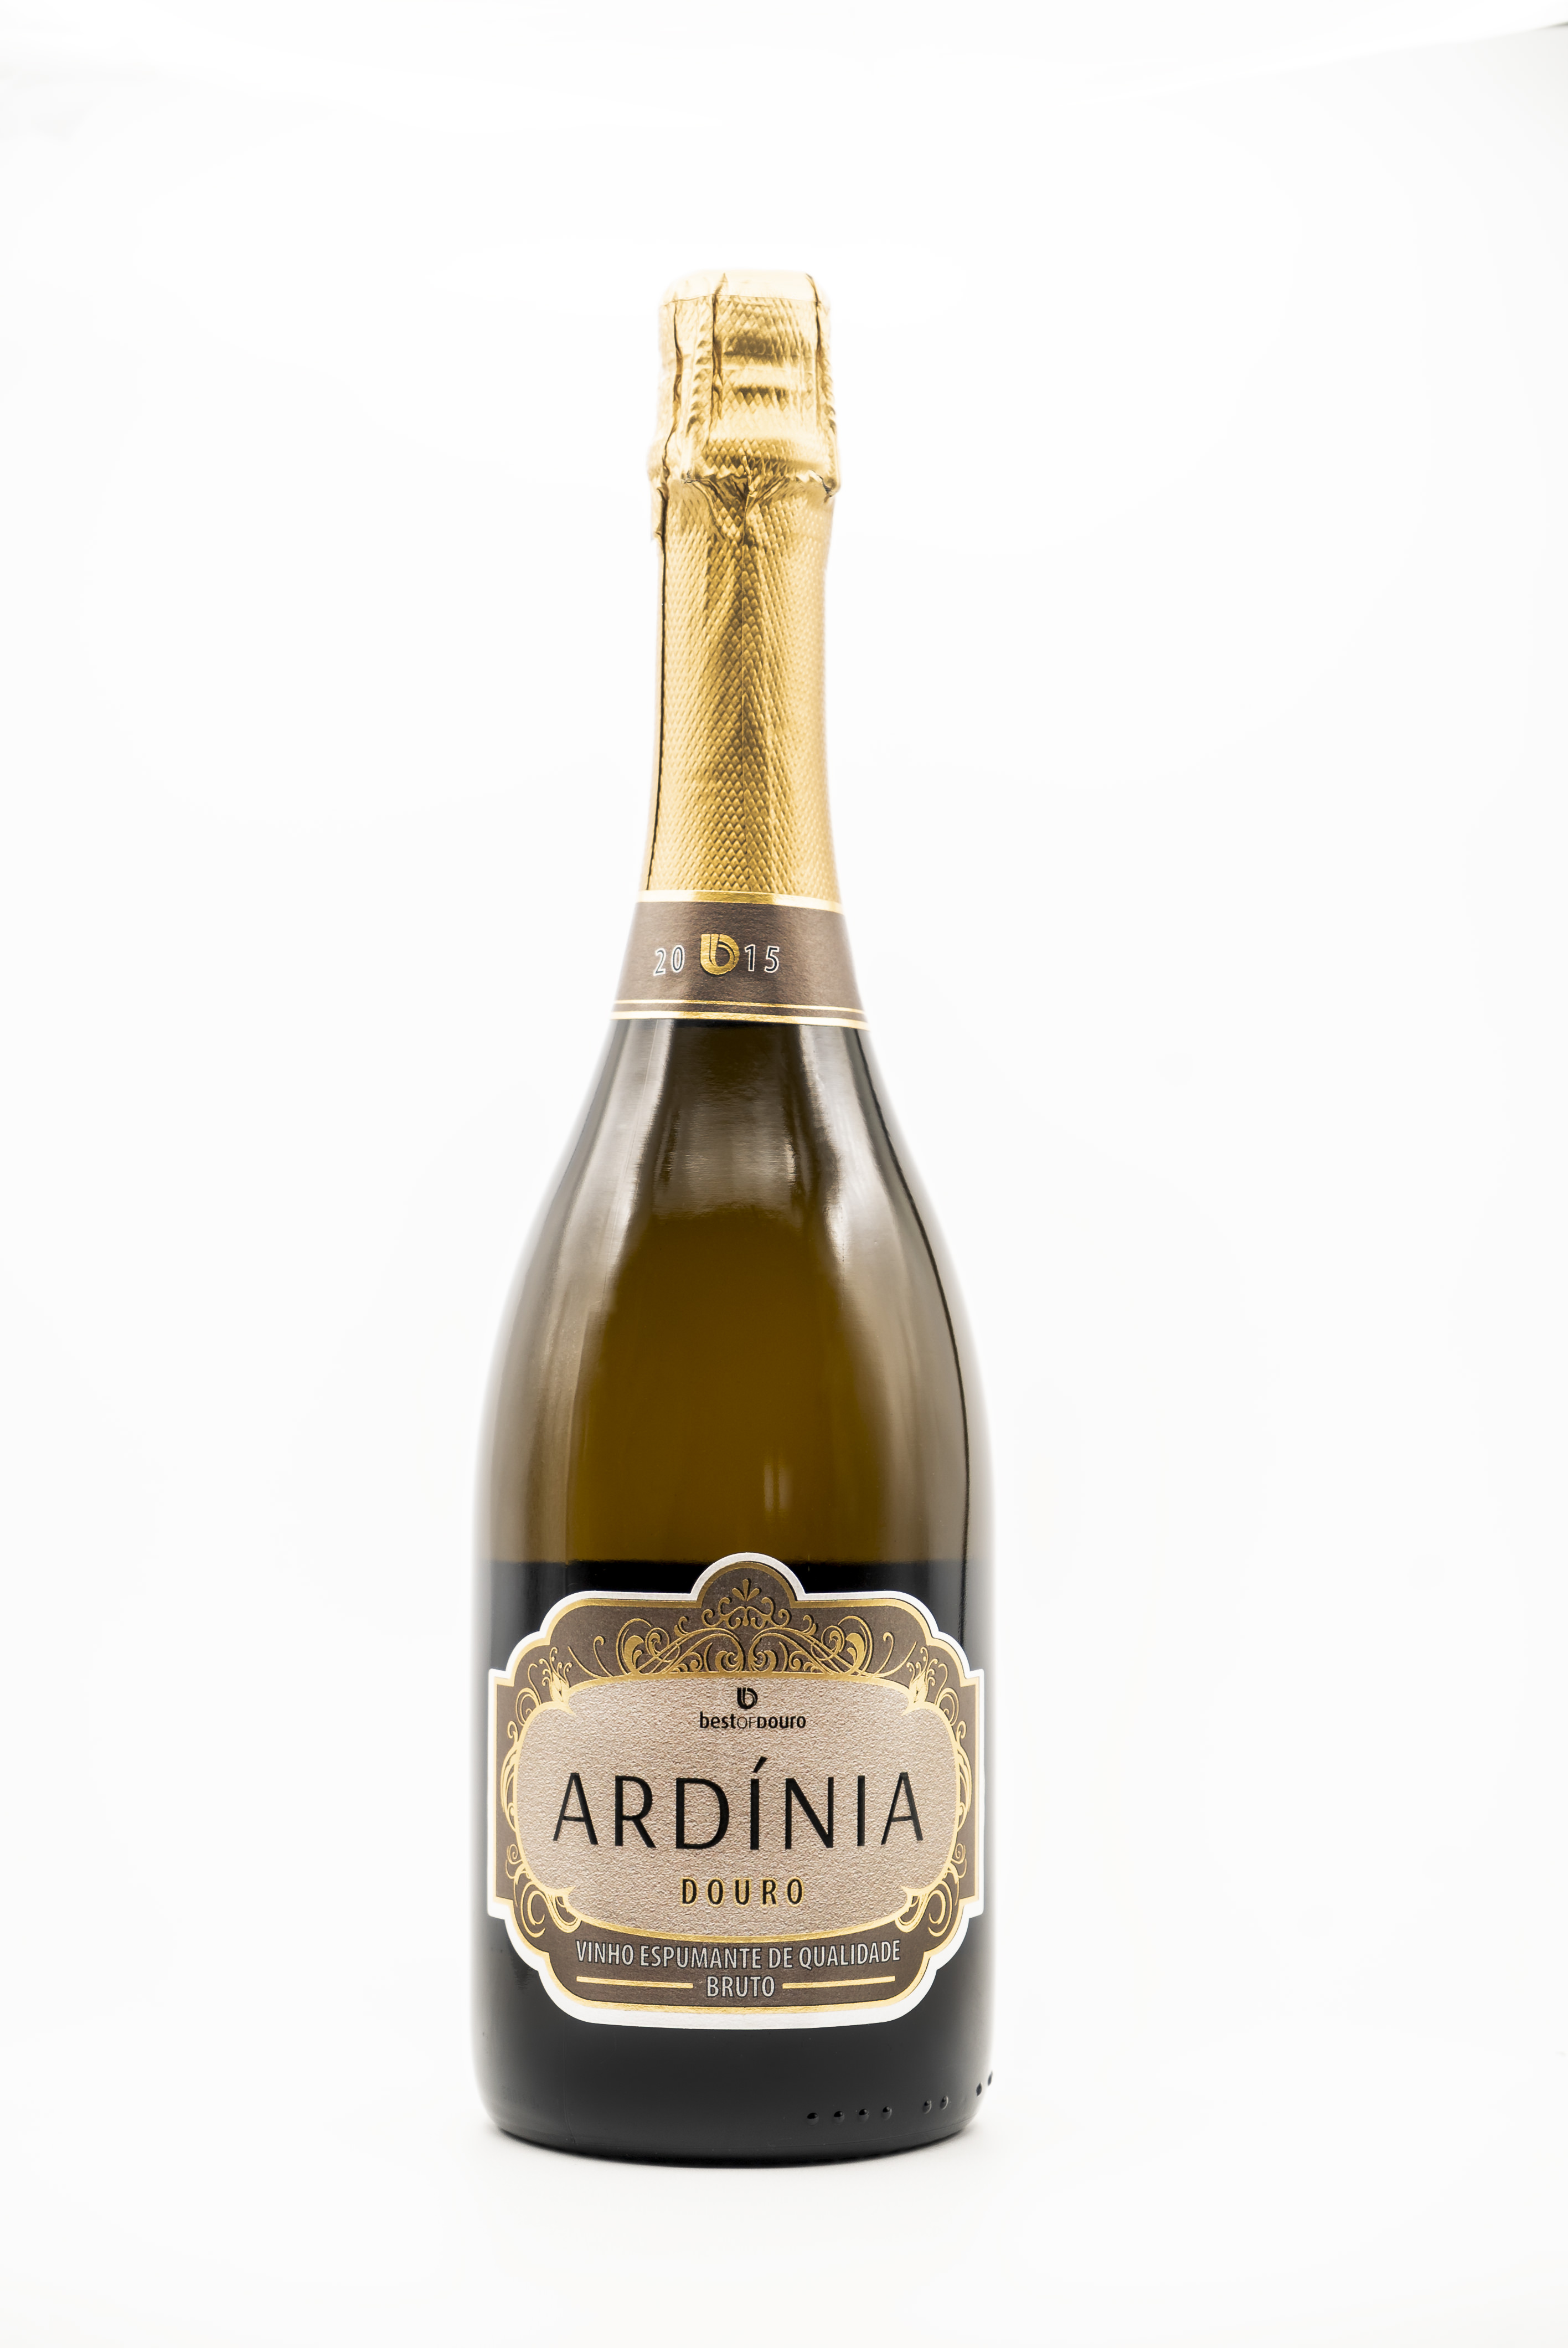 Best of Douro - Ardinia Vinho Espumante Douro DOC